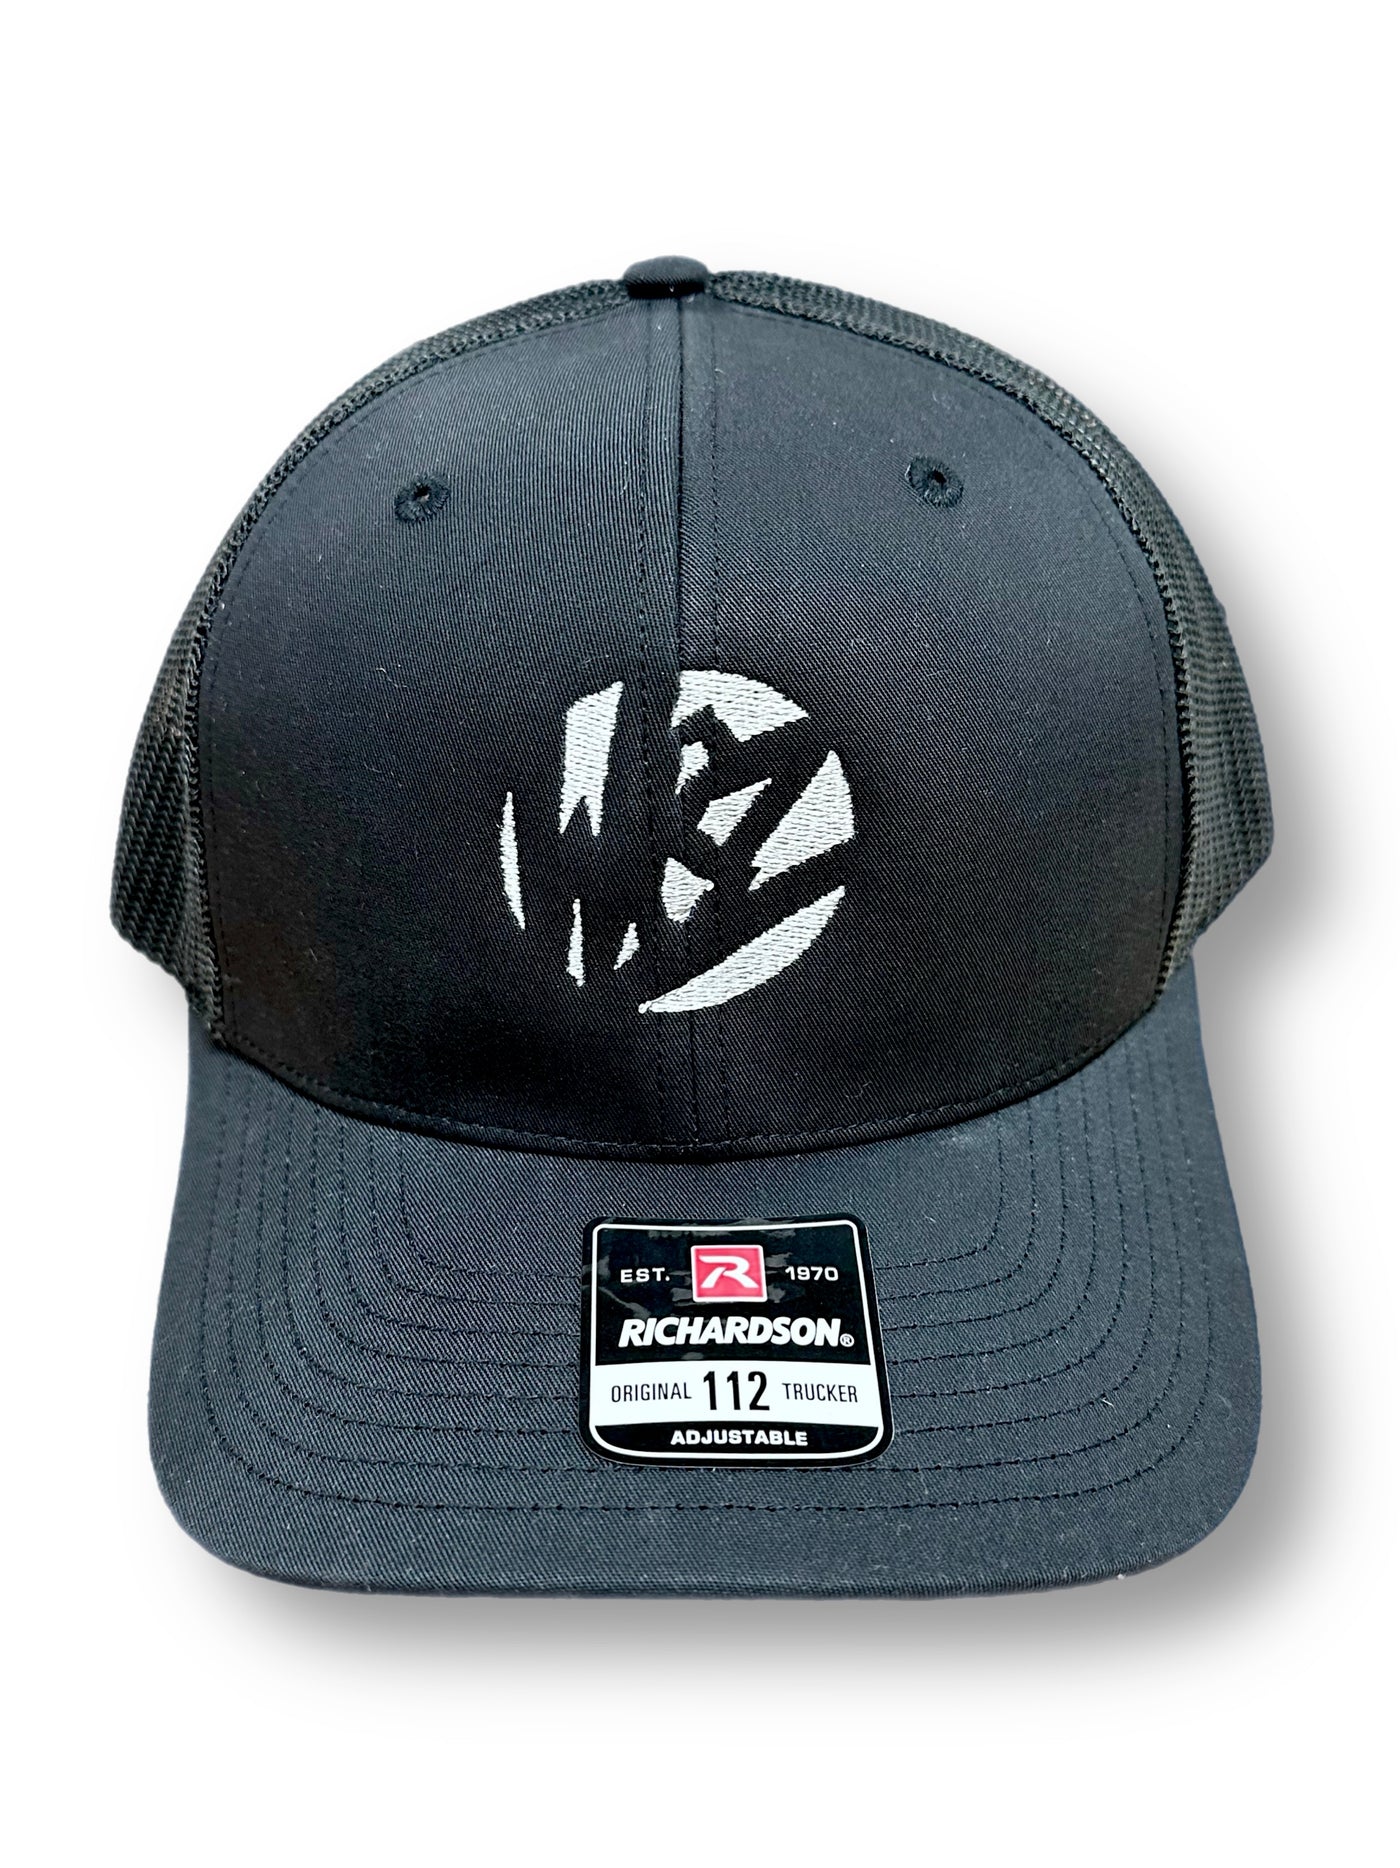 WBZ OG Trucker hat